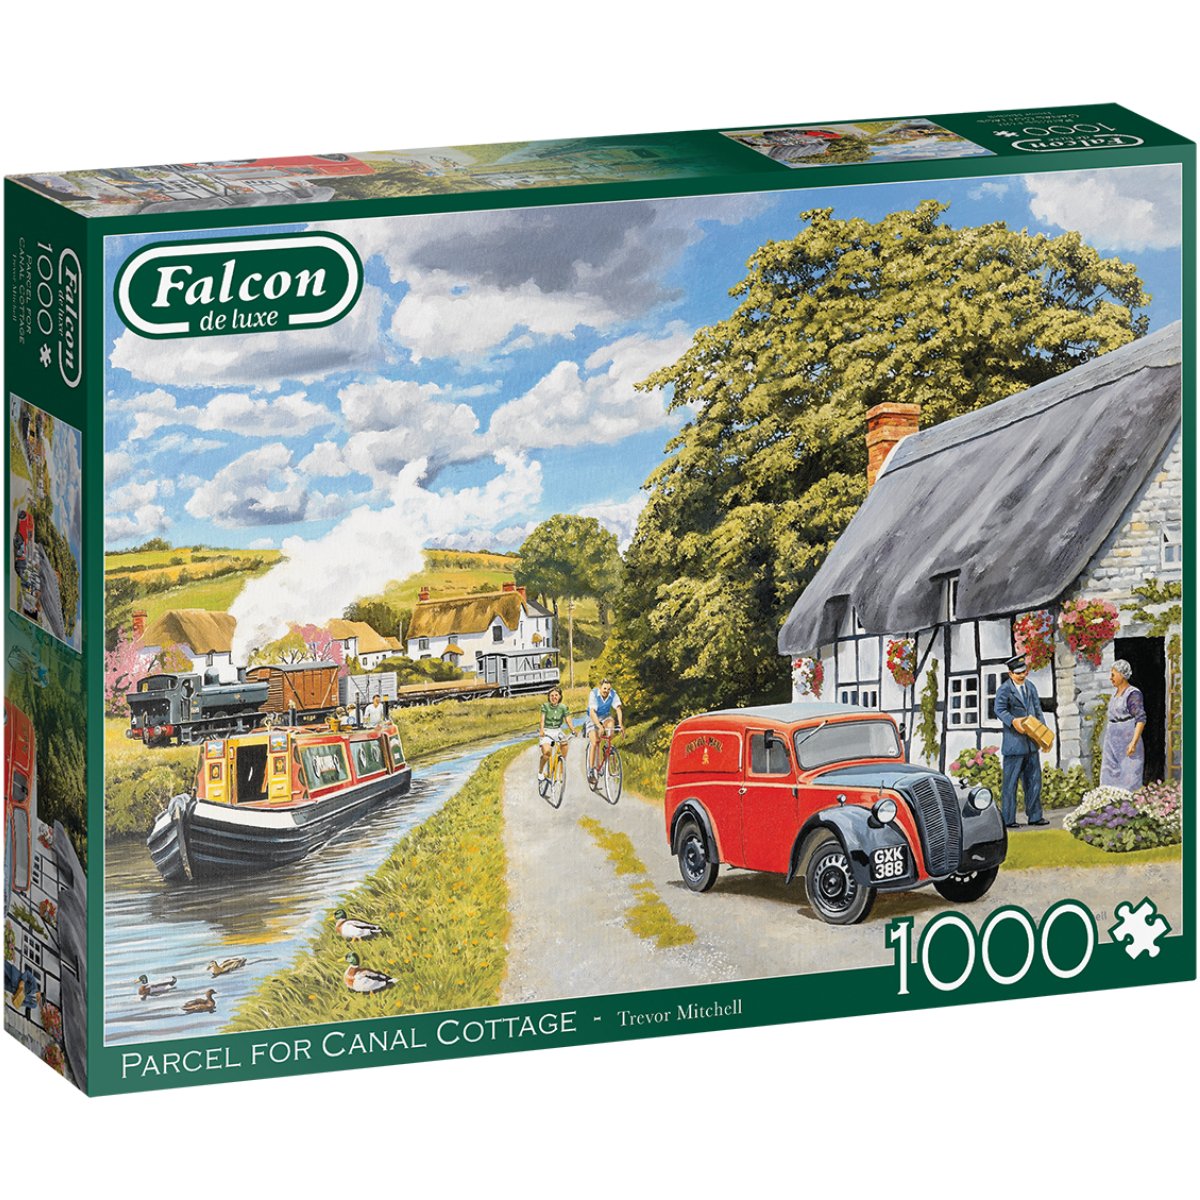 Falcon de Luxe Parcel for Canal Cottage 1000 Piece Puzzle - Phillips Hobbies